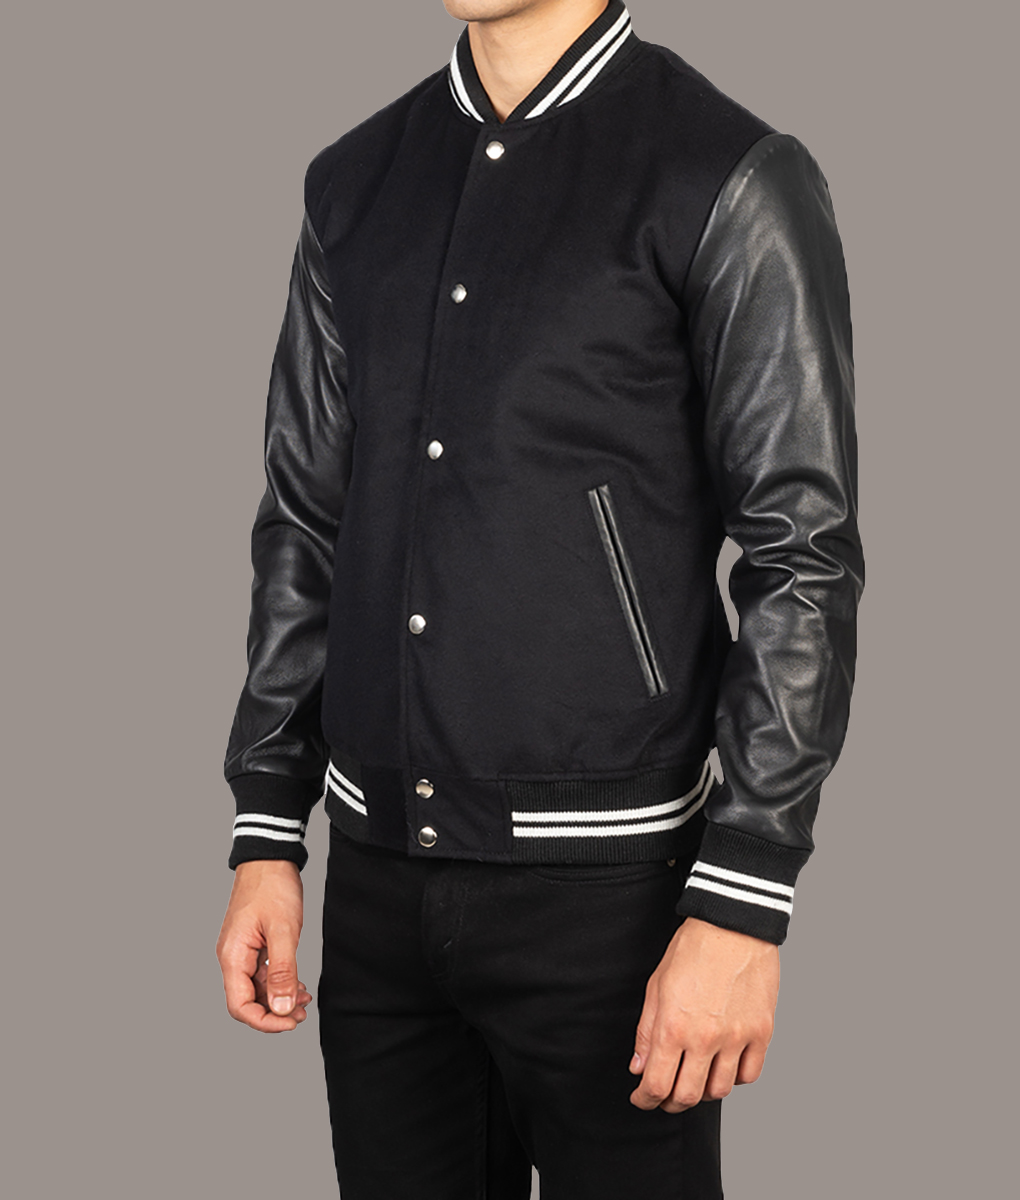 Ryan Gosling Black Varsity Jacket (5)